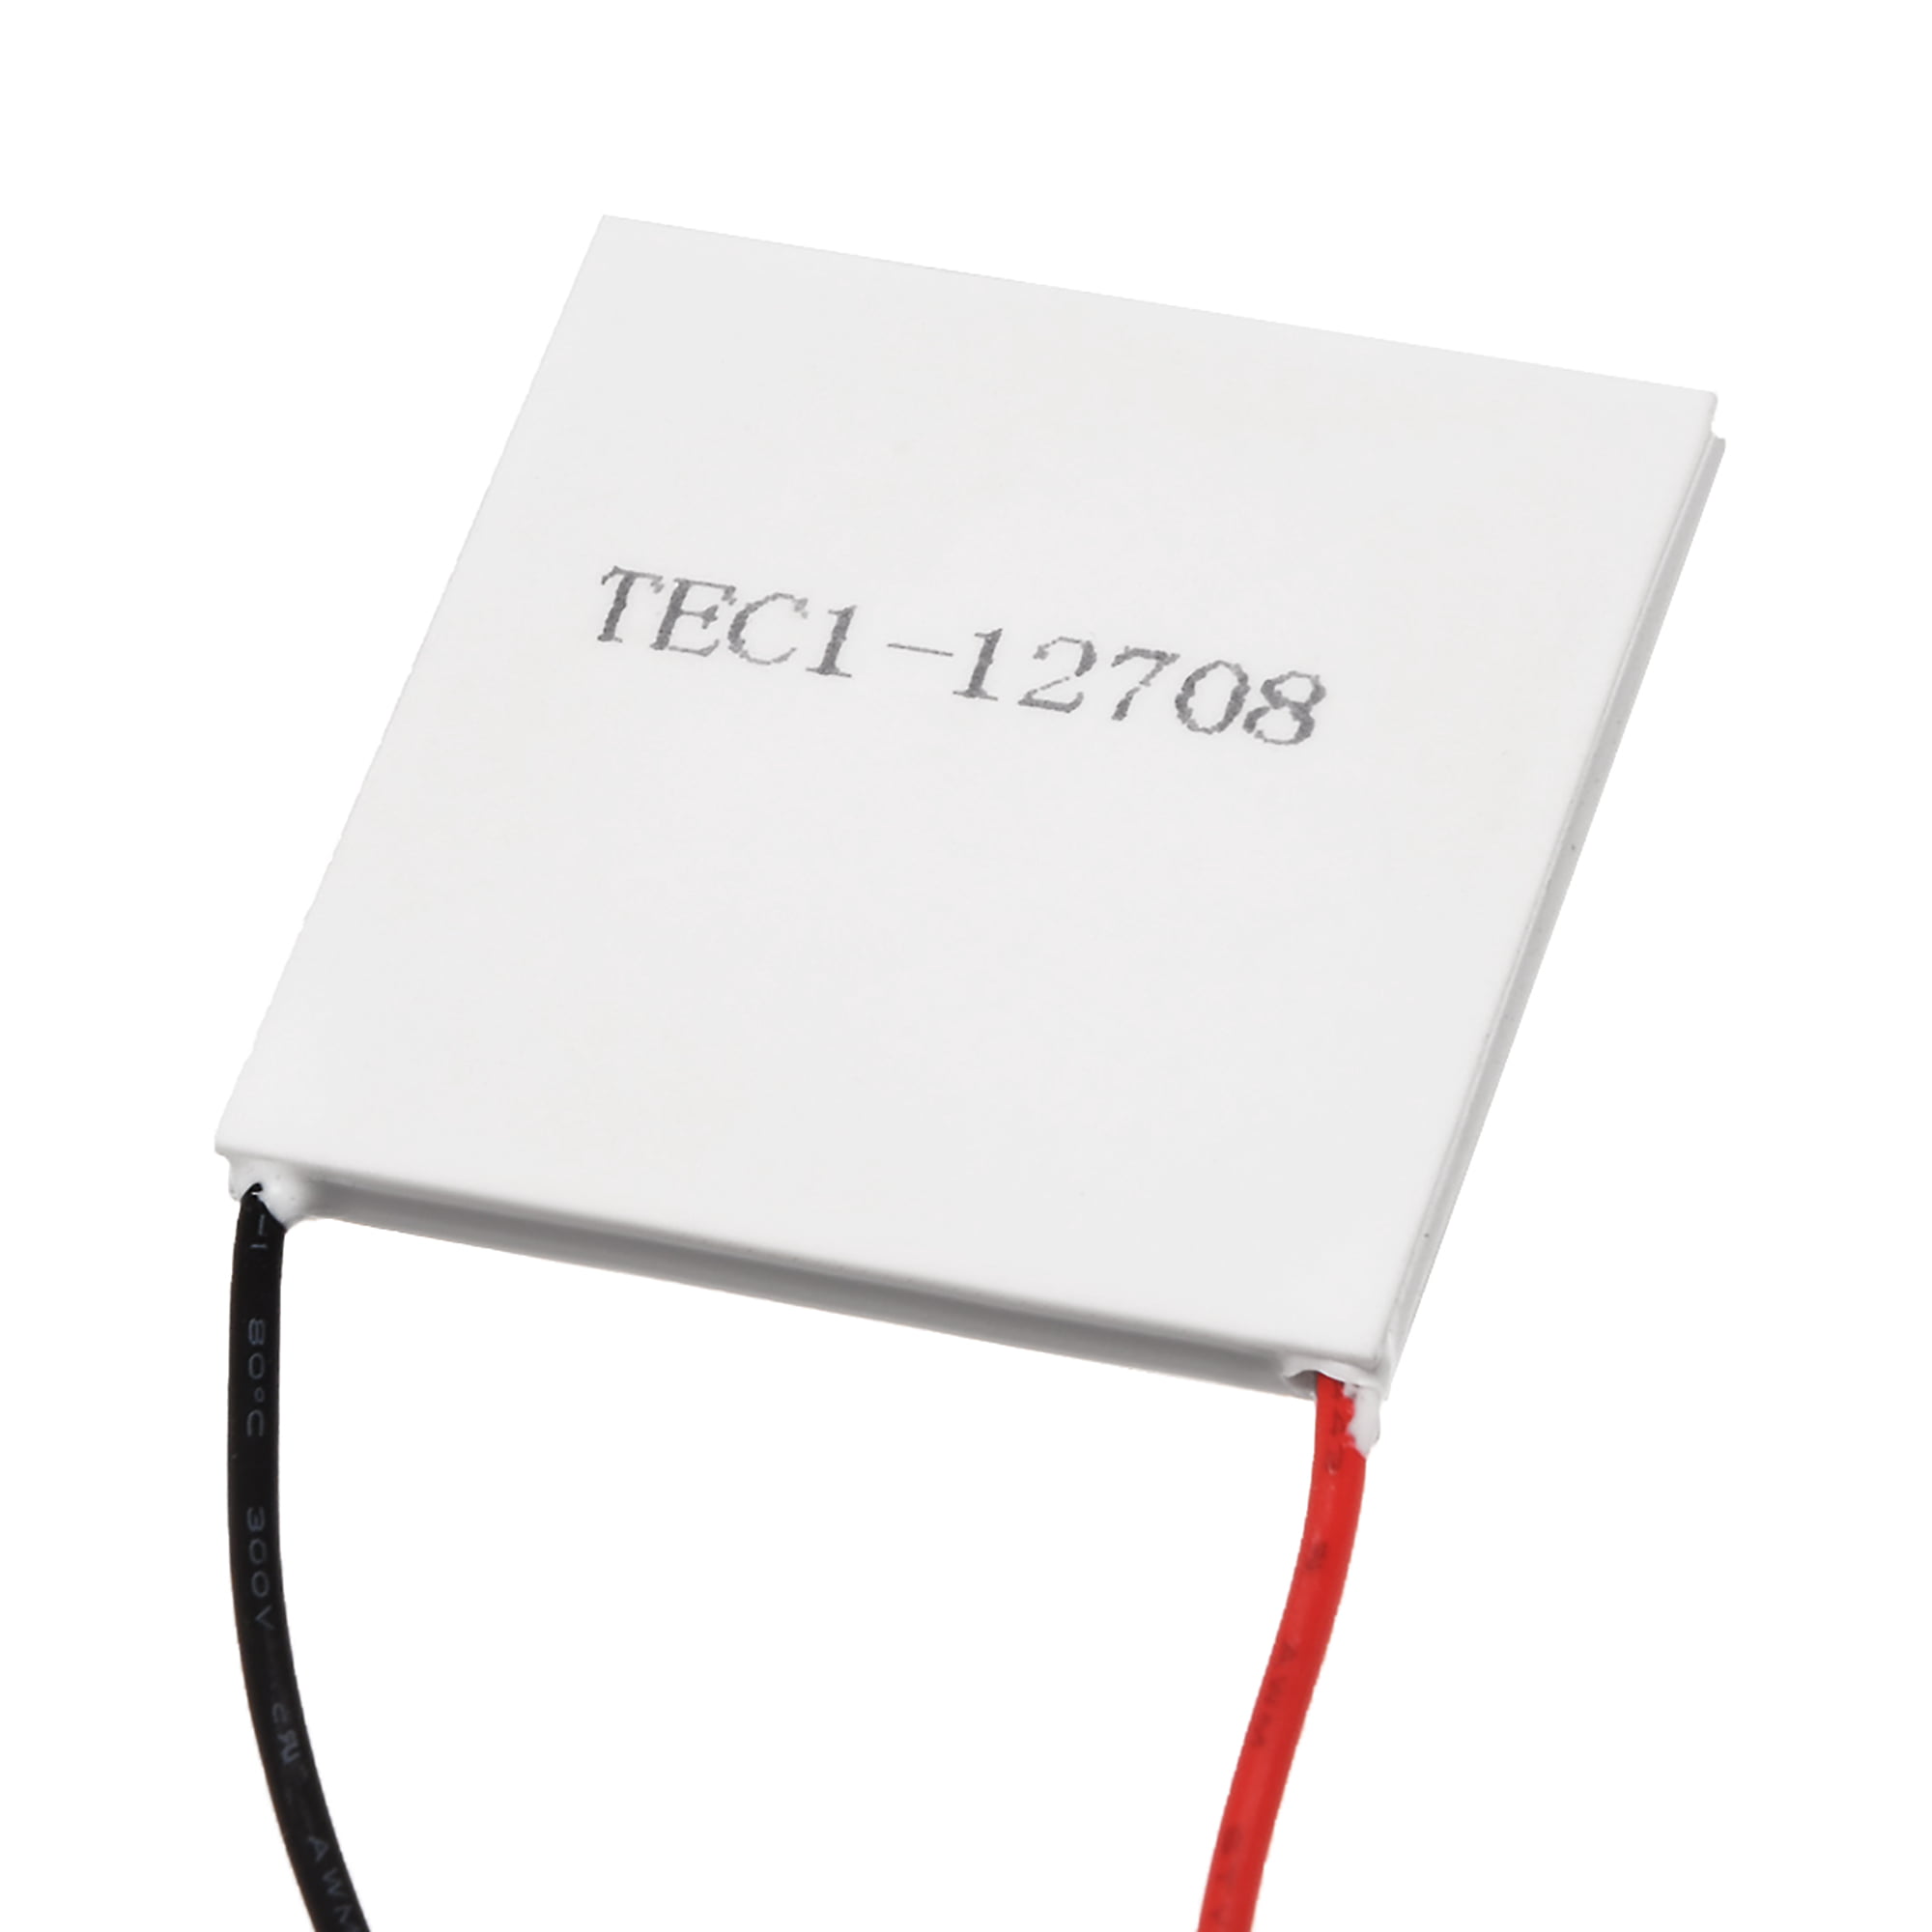 Tec1 12708 Thermoelectric Cooler Heat Sink Cooling Peltier 12 Volt 77 Watt